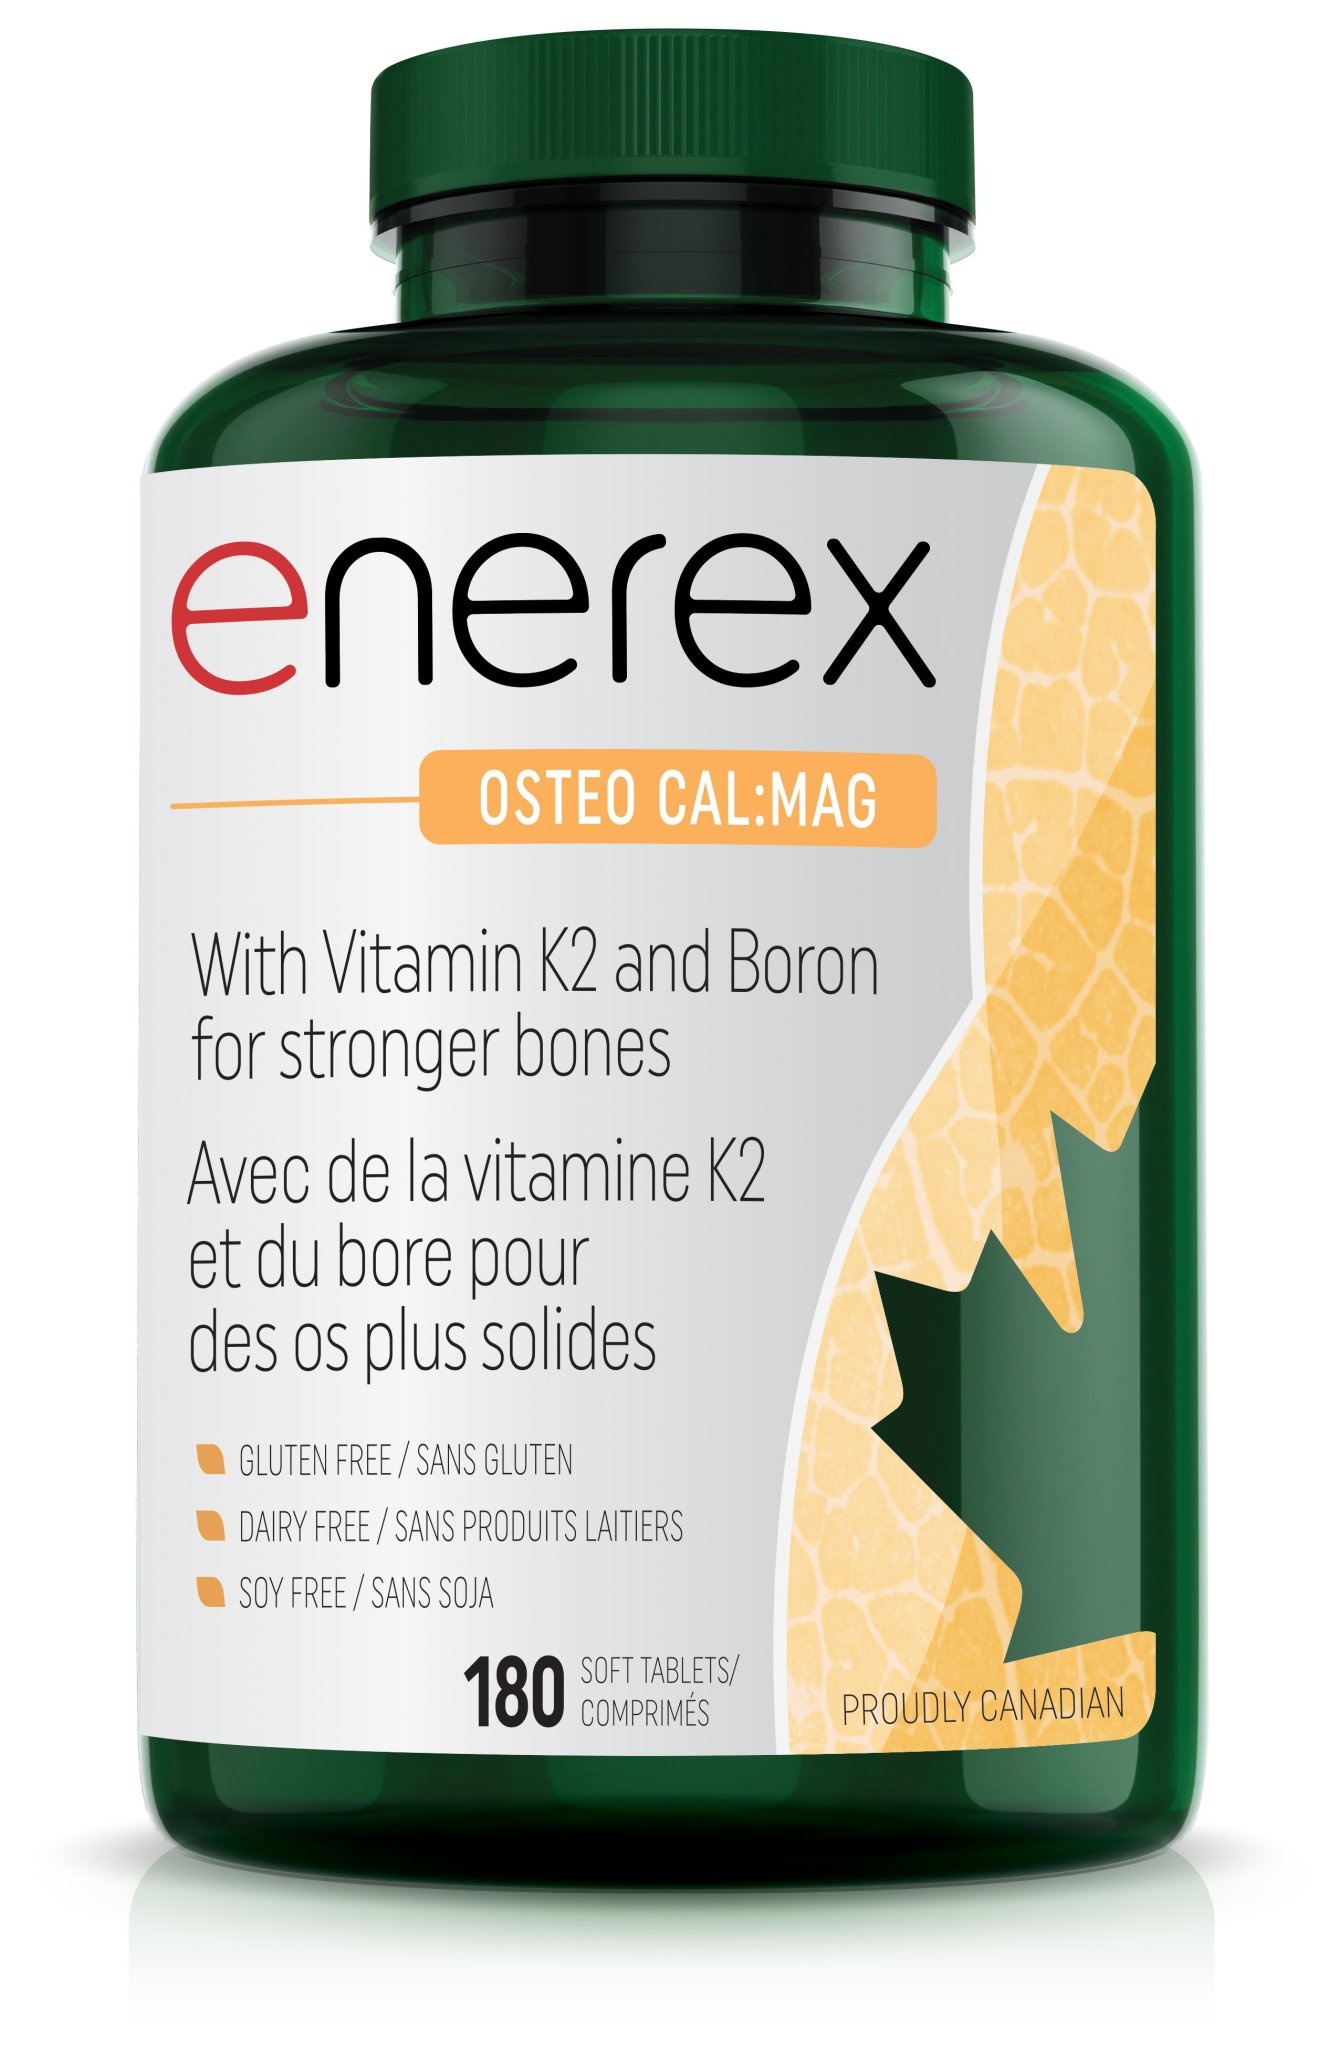 Enerex - Osteo Cal:Mag - 180 Tabs